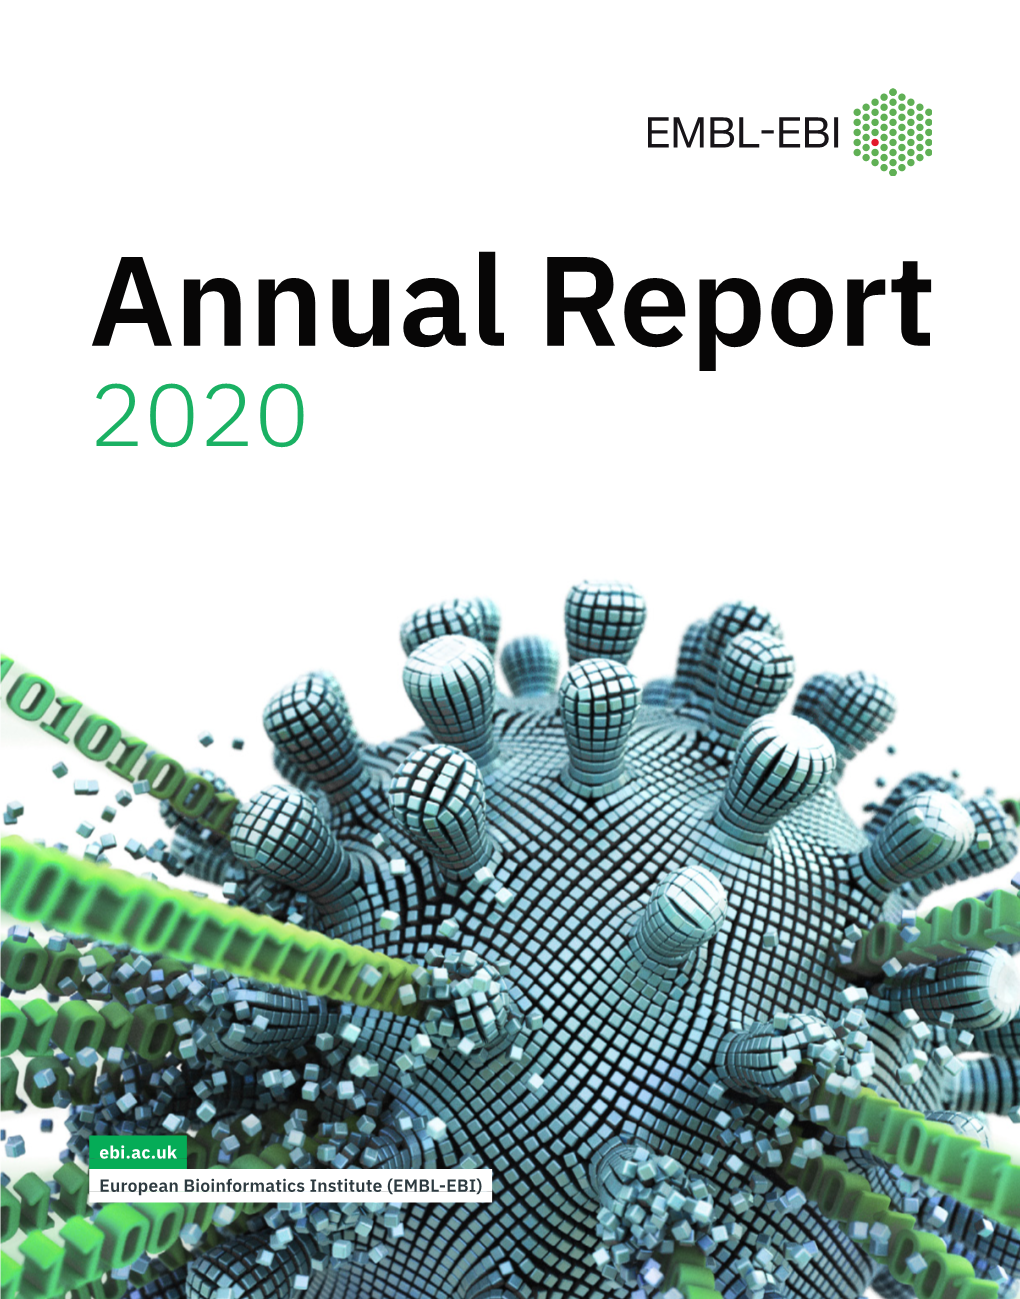 EMBL-EBI Annual Report